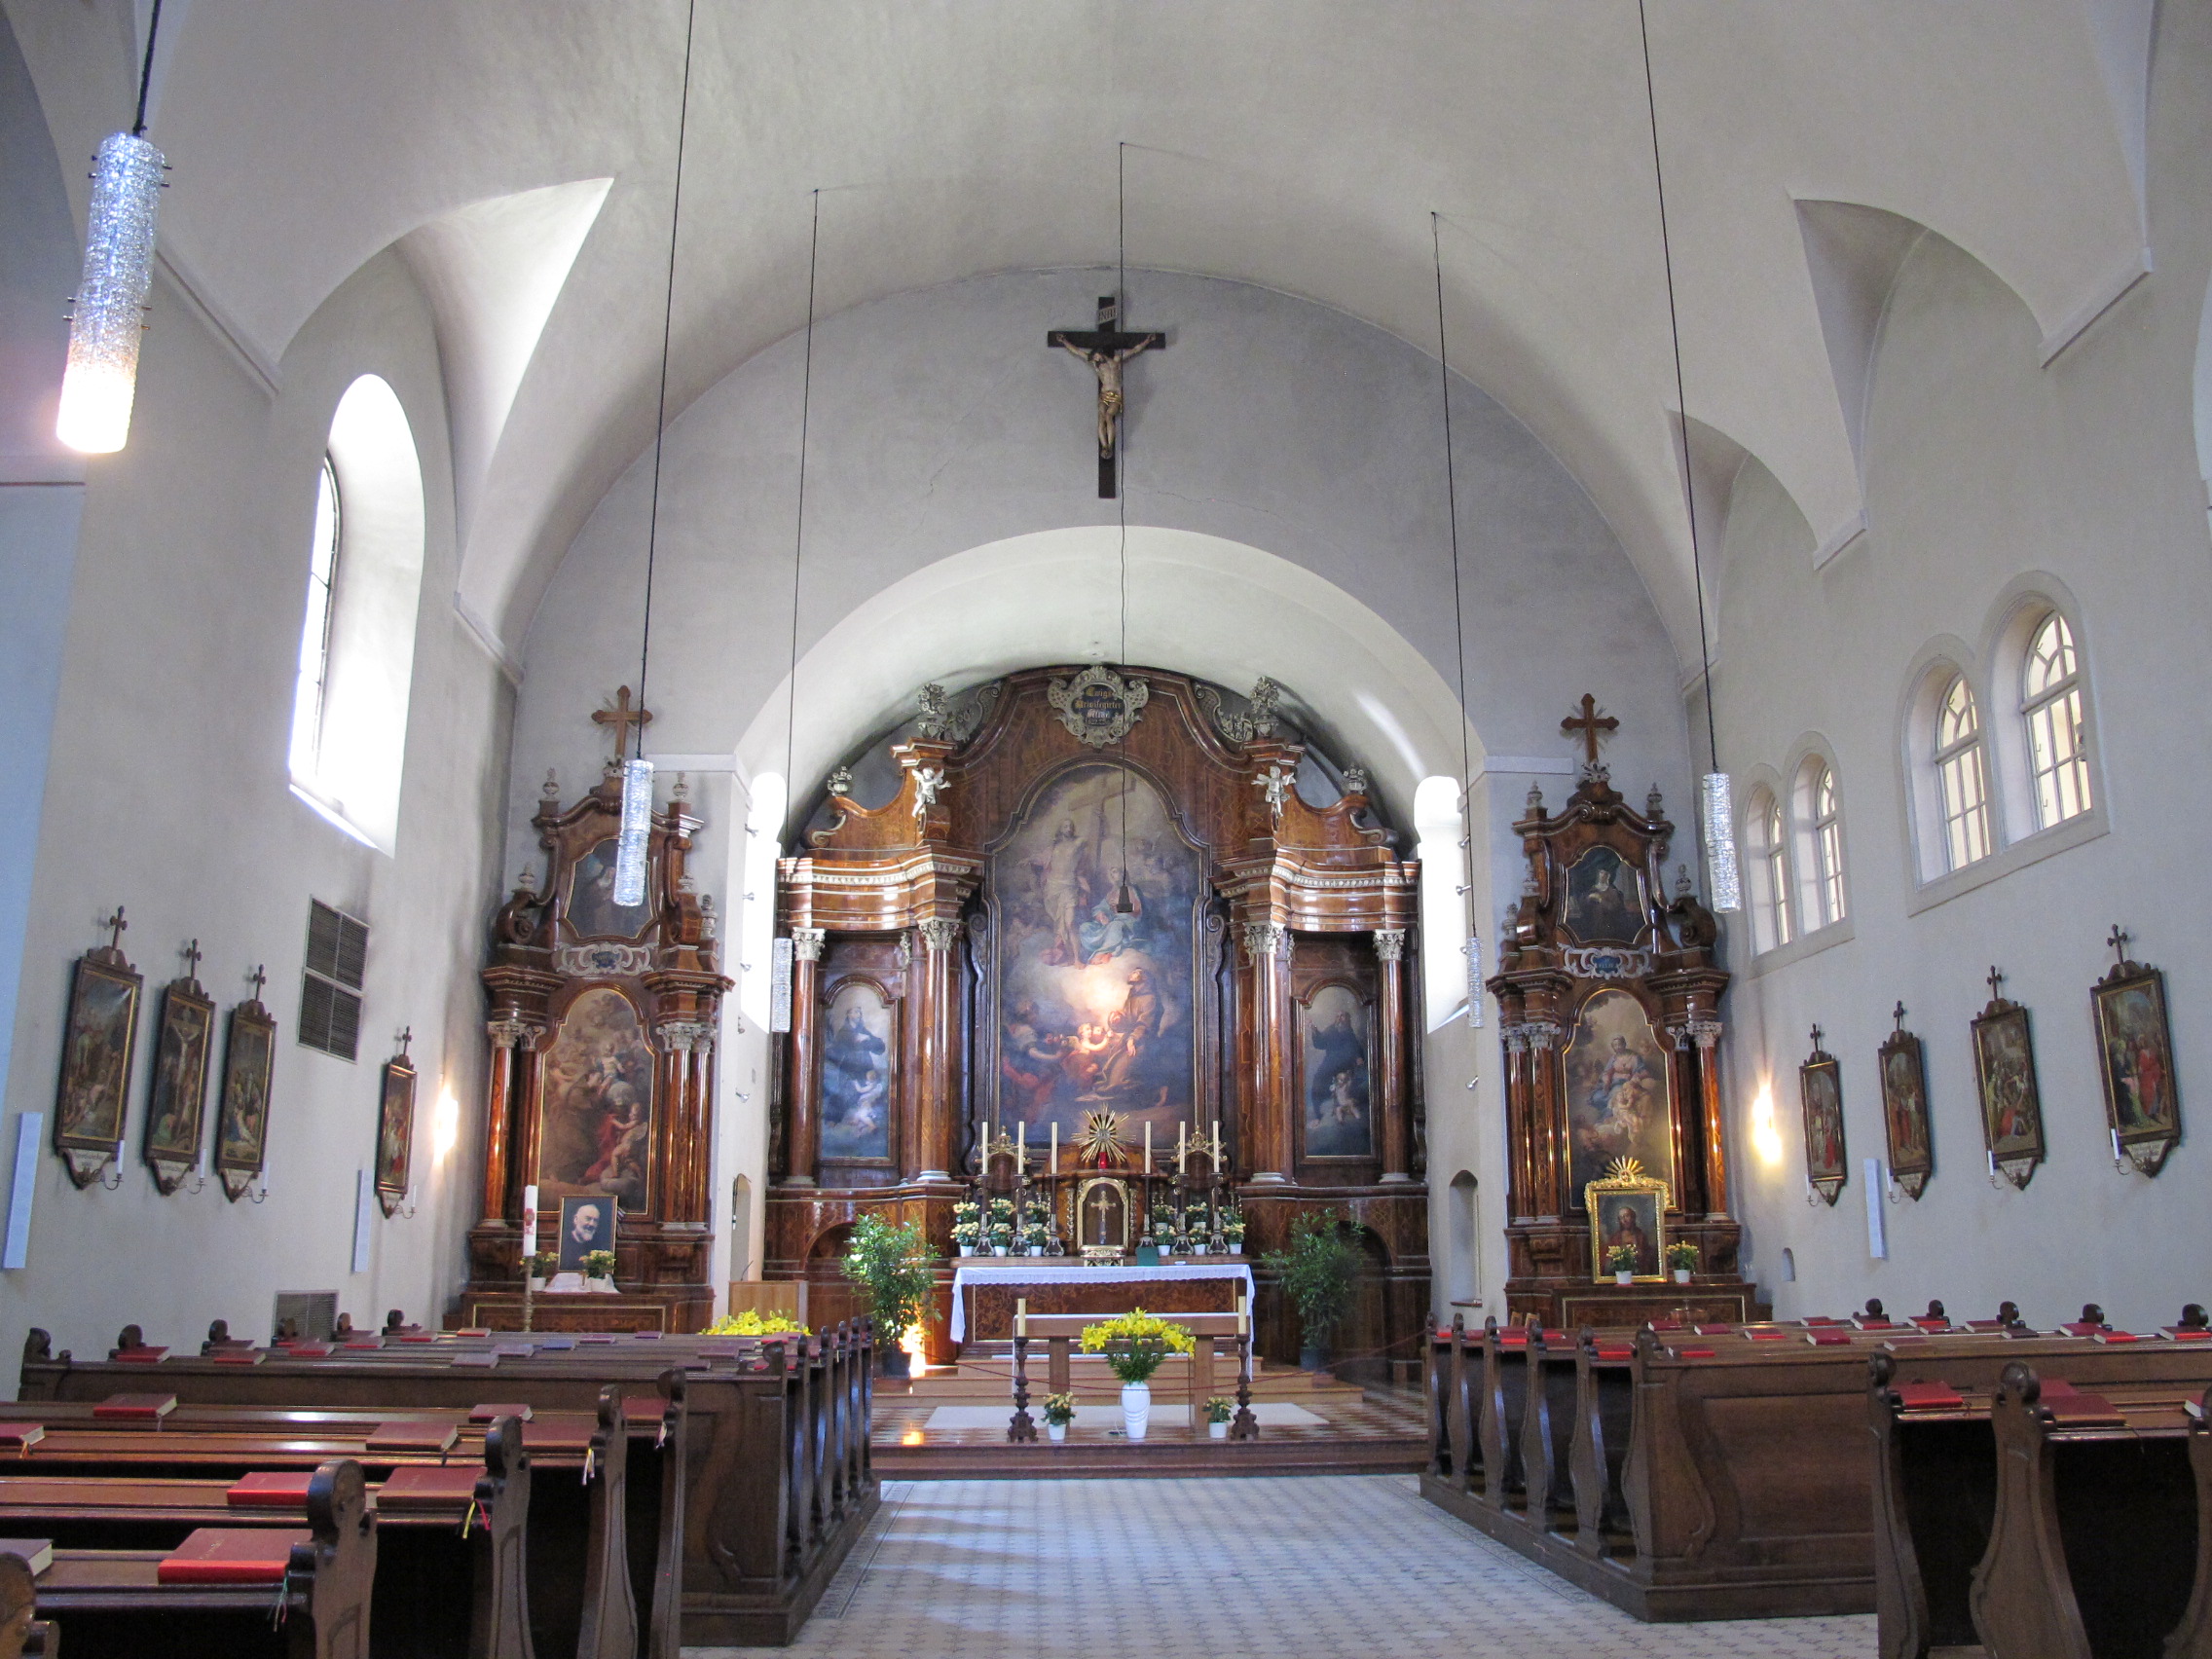 Capuchin Church interior